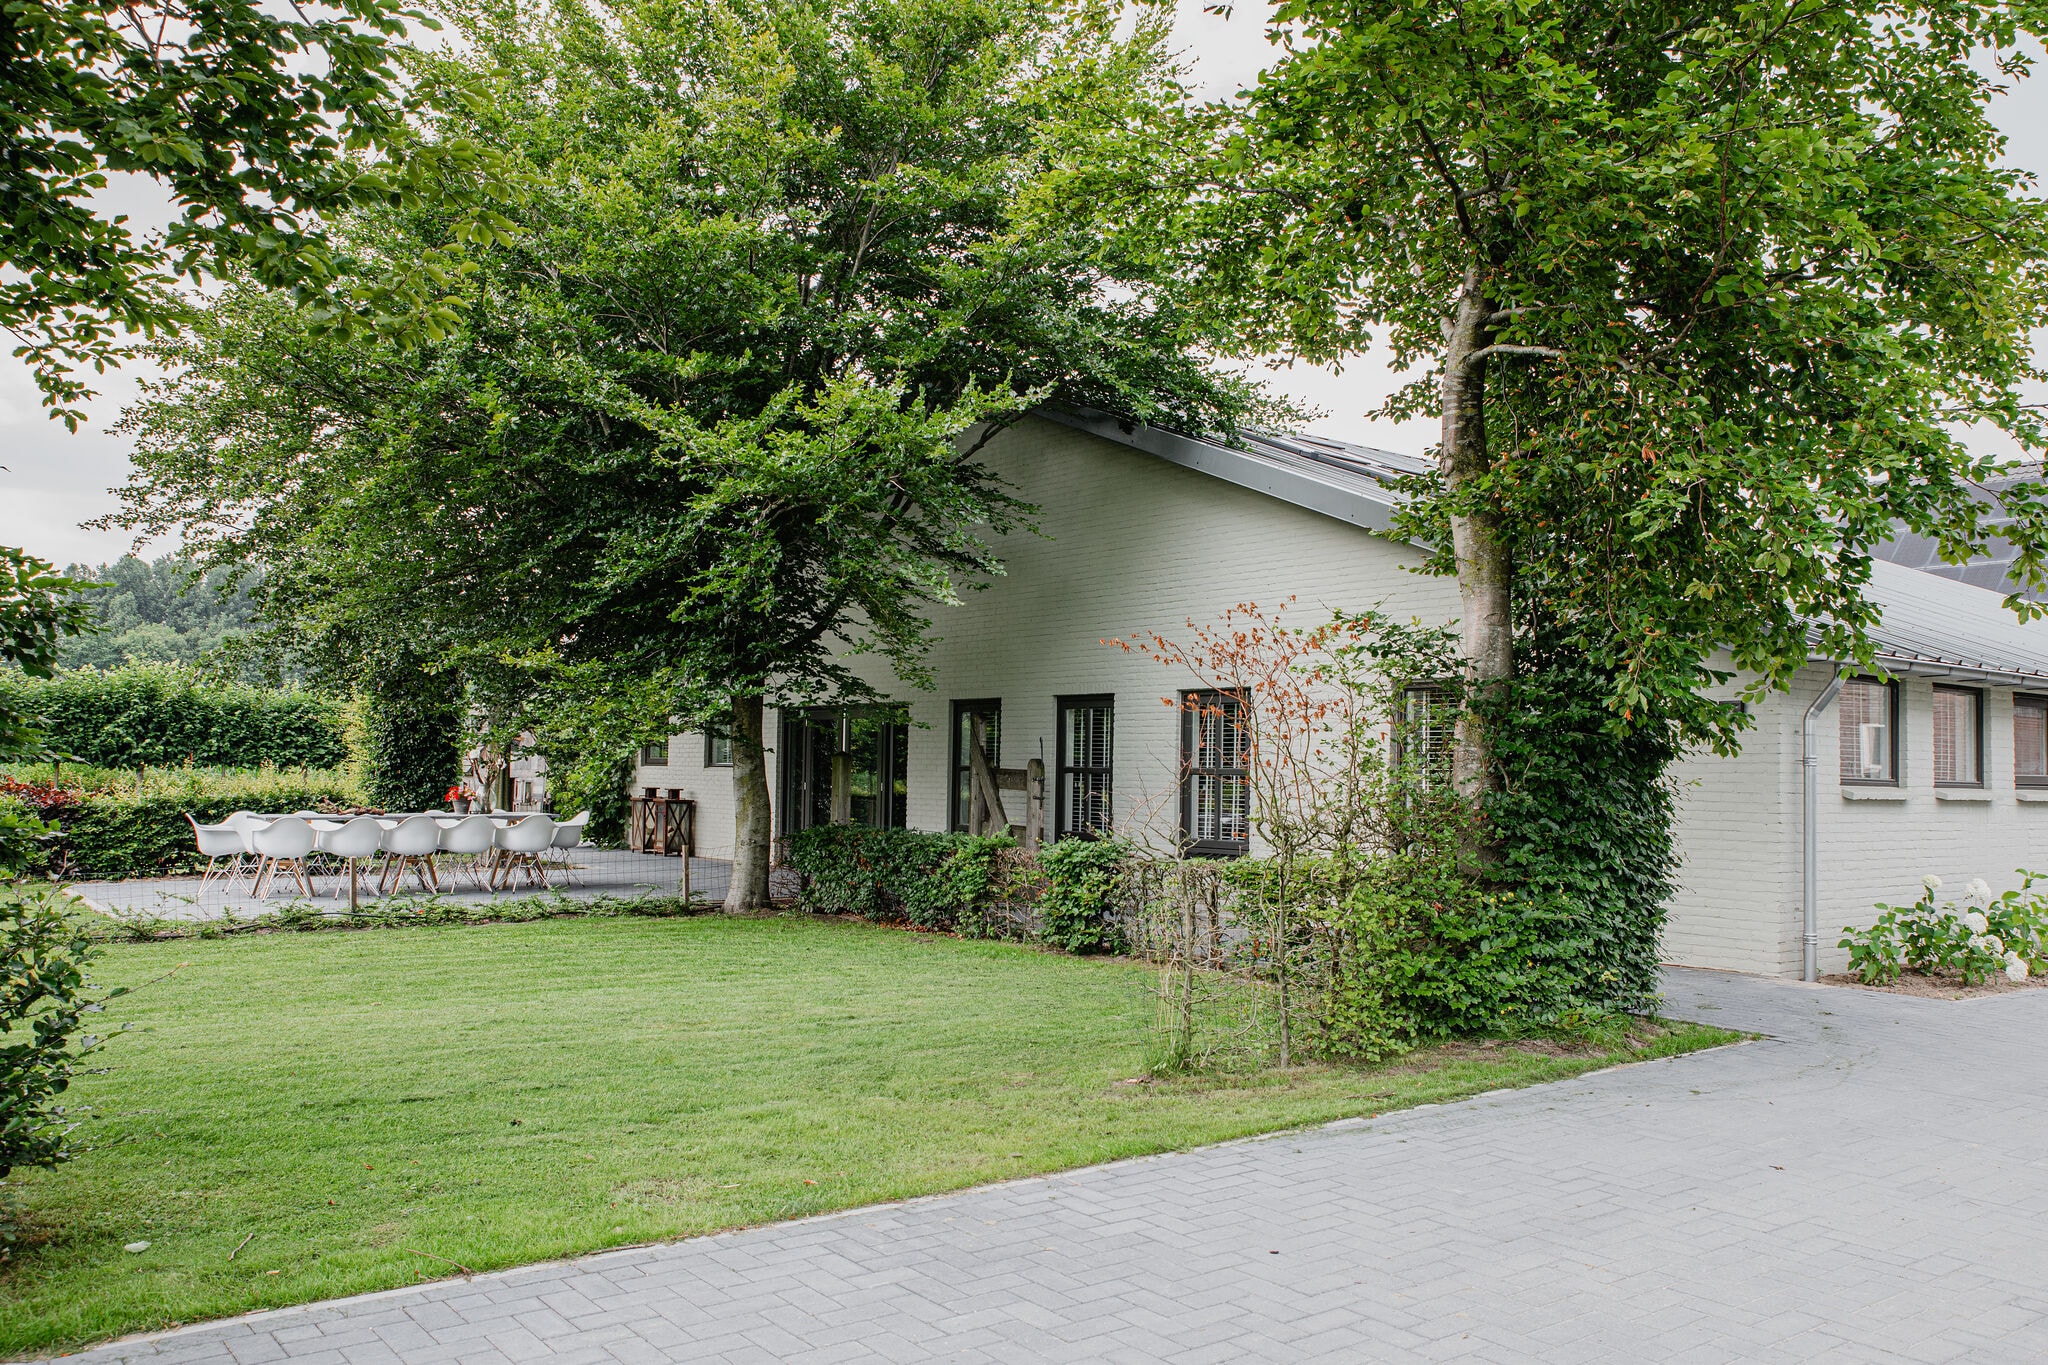 Ruim vakantiehuis in Leende met tuin